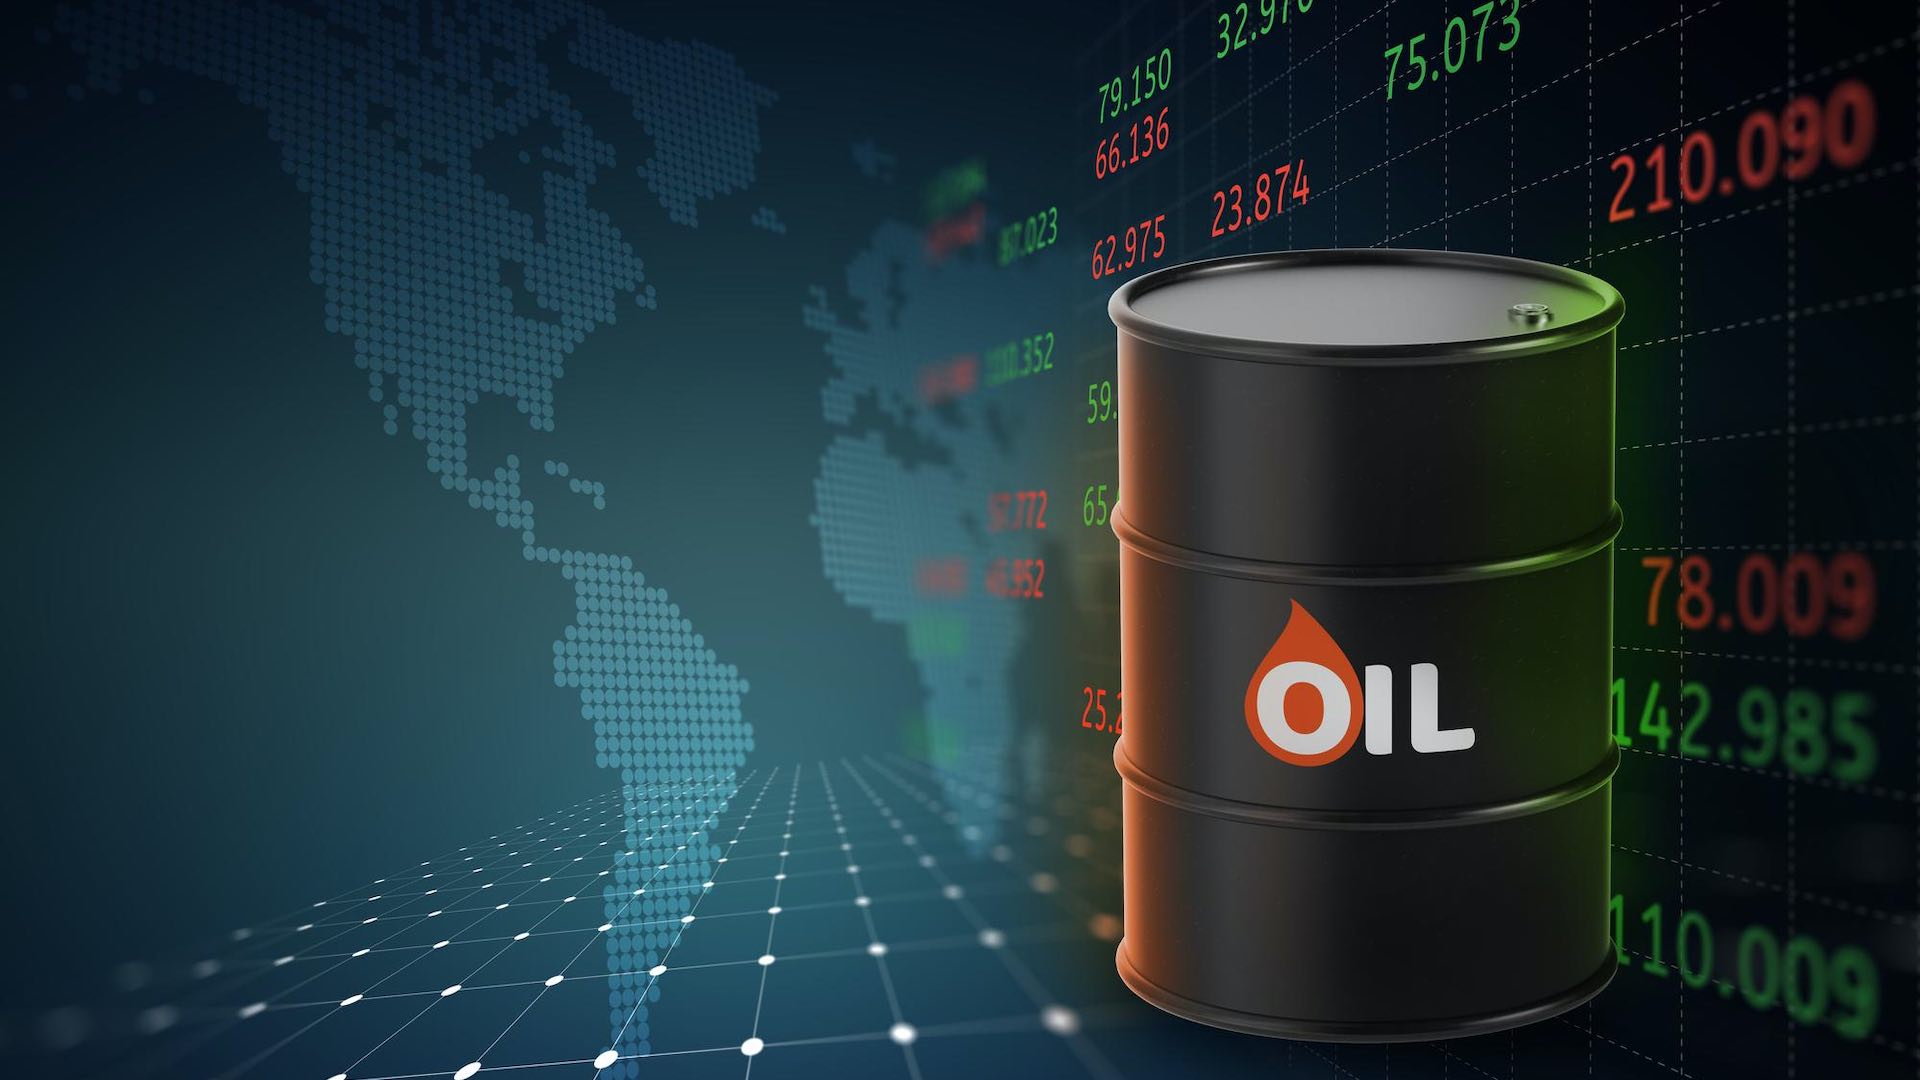 النفط يرتفع مع تقرير أوبك الذي سلط الضوء على الطلب المستقر